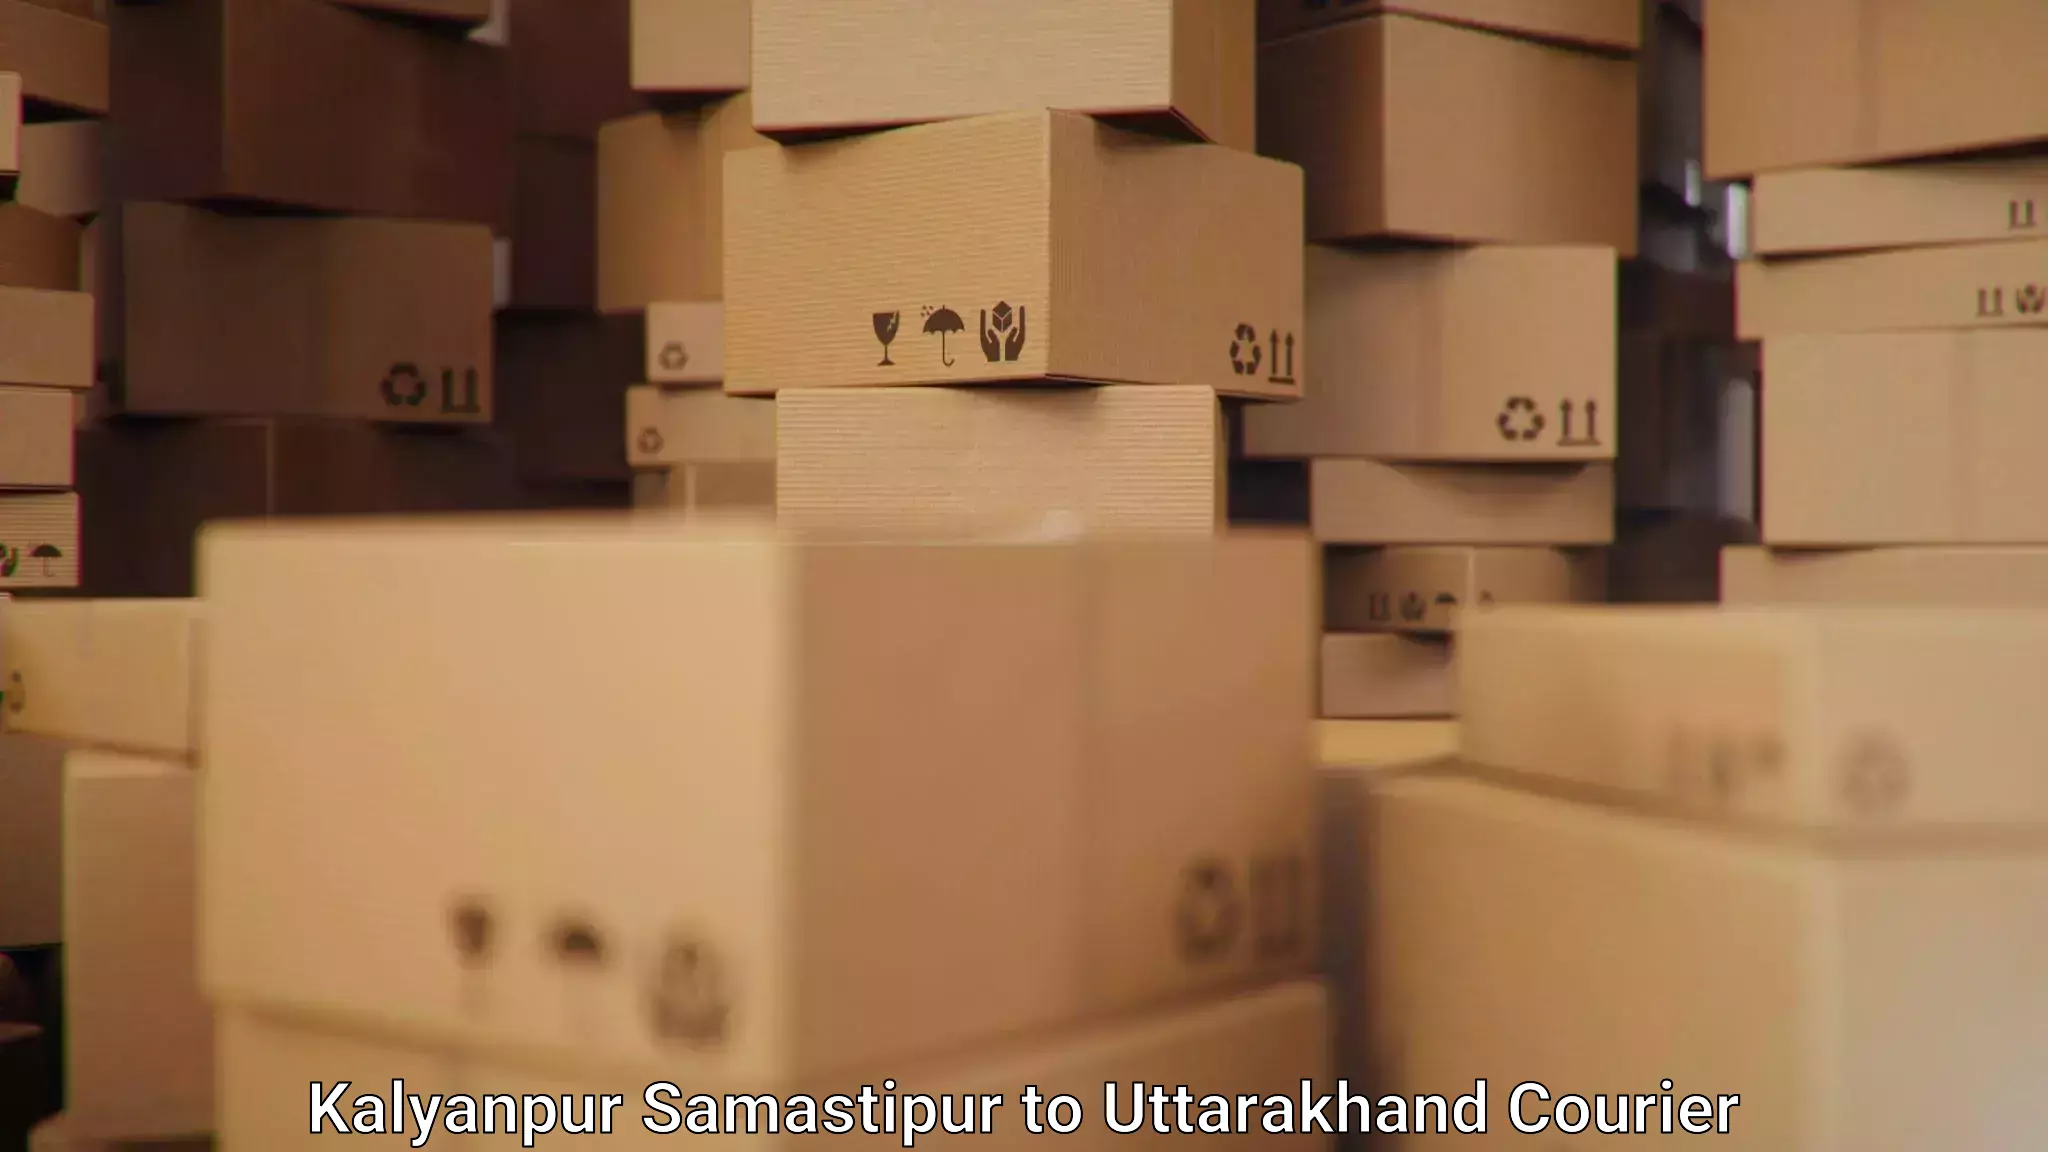 Package forwarding in Kalyanpur Samastipur to Ramnagar